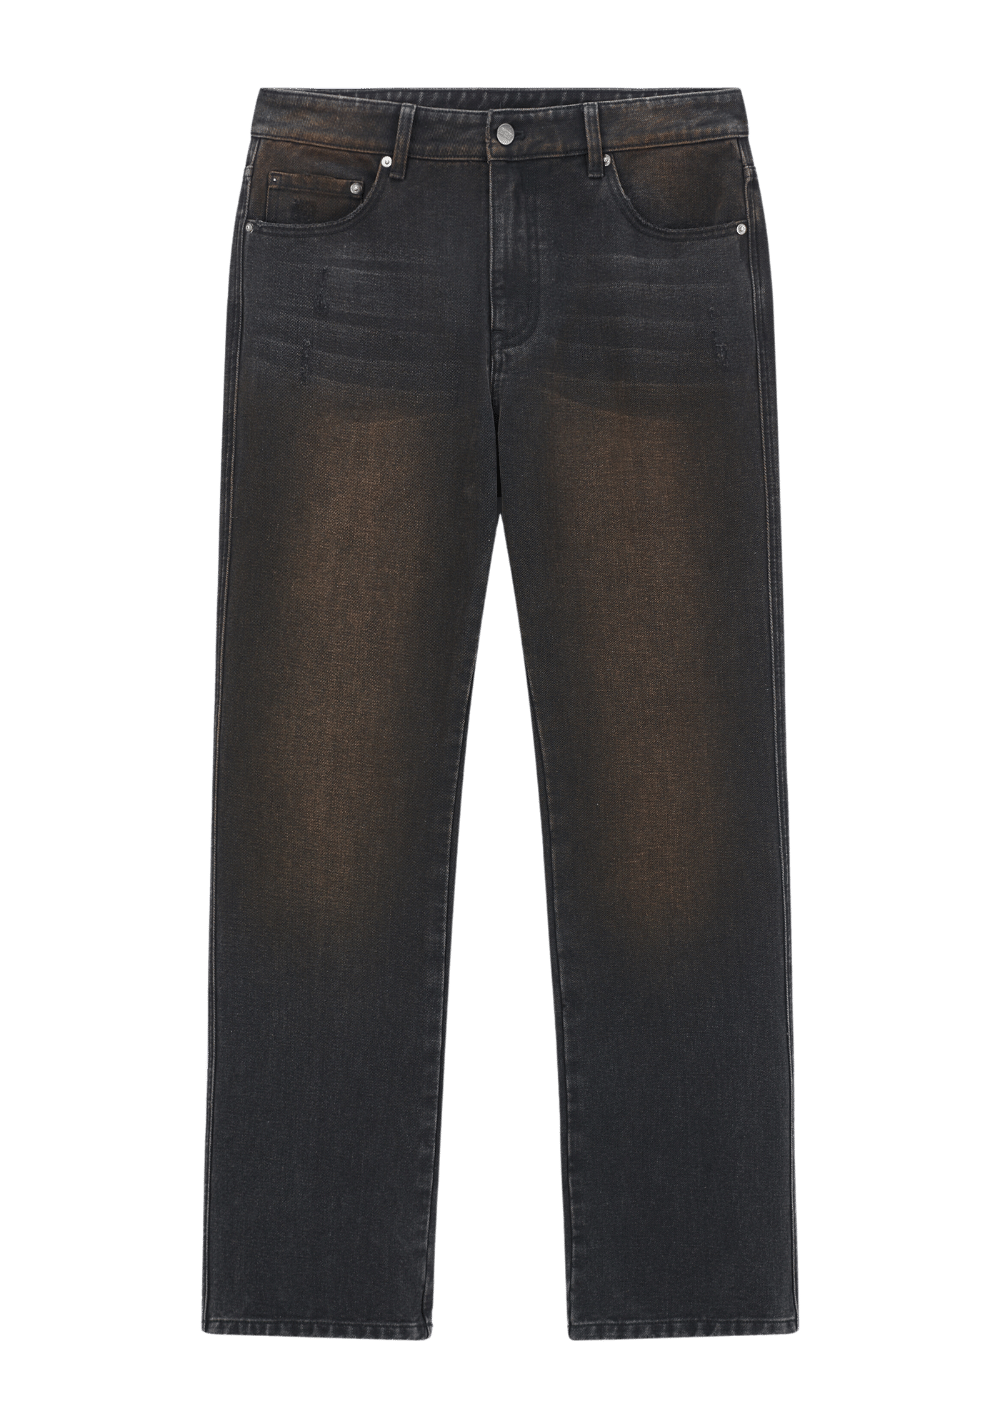 Mud Dyed Vintage Distressed Jeans - PSYLOS 1, Mud Dyed Vintage Distressed Jeans, Pants, Boneless, PSYLOS 1